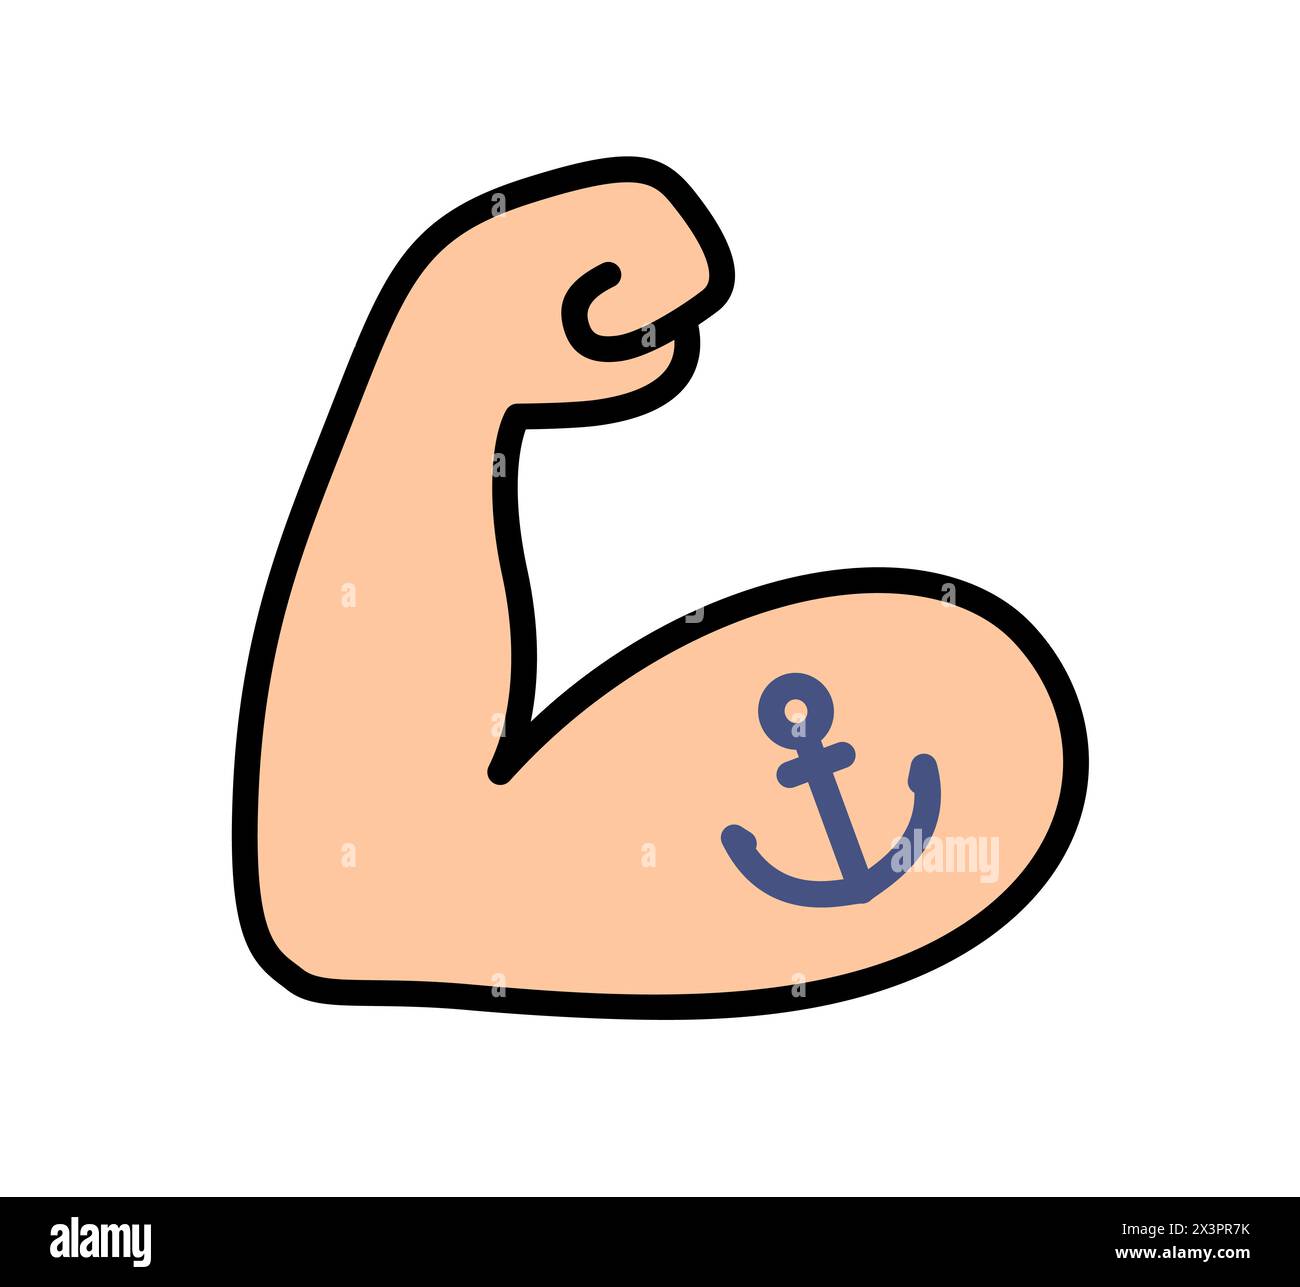 Flexibles tätowiertes Bizeps-Emoji-Symbol. Kräftiger Muskelarm mit Anker-Sailor-Tattoo, Zeichentricksymbol. Vektor Hand gezeichnete Kritzelillustration. Stock Vektor